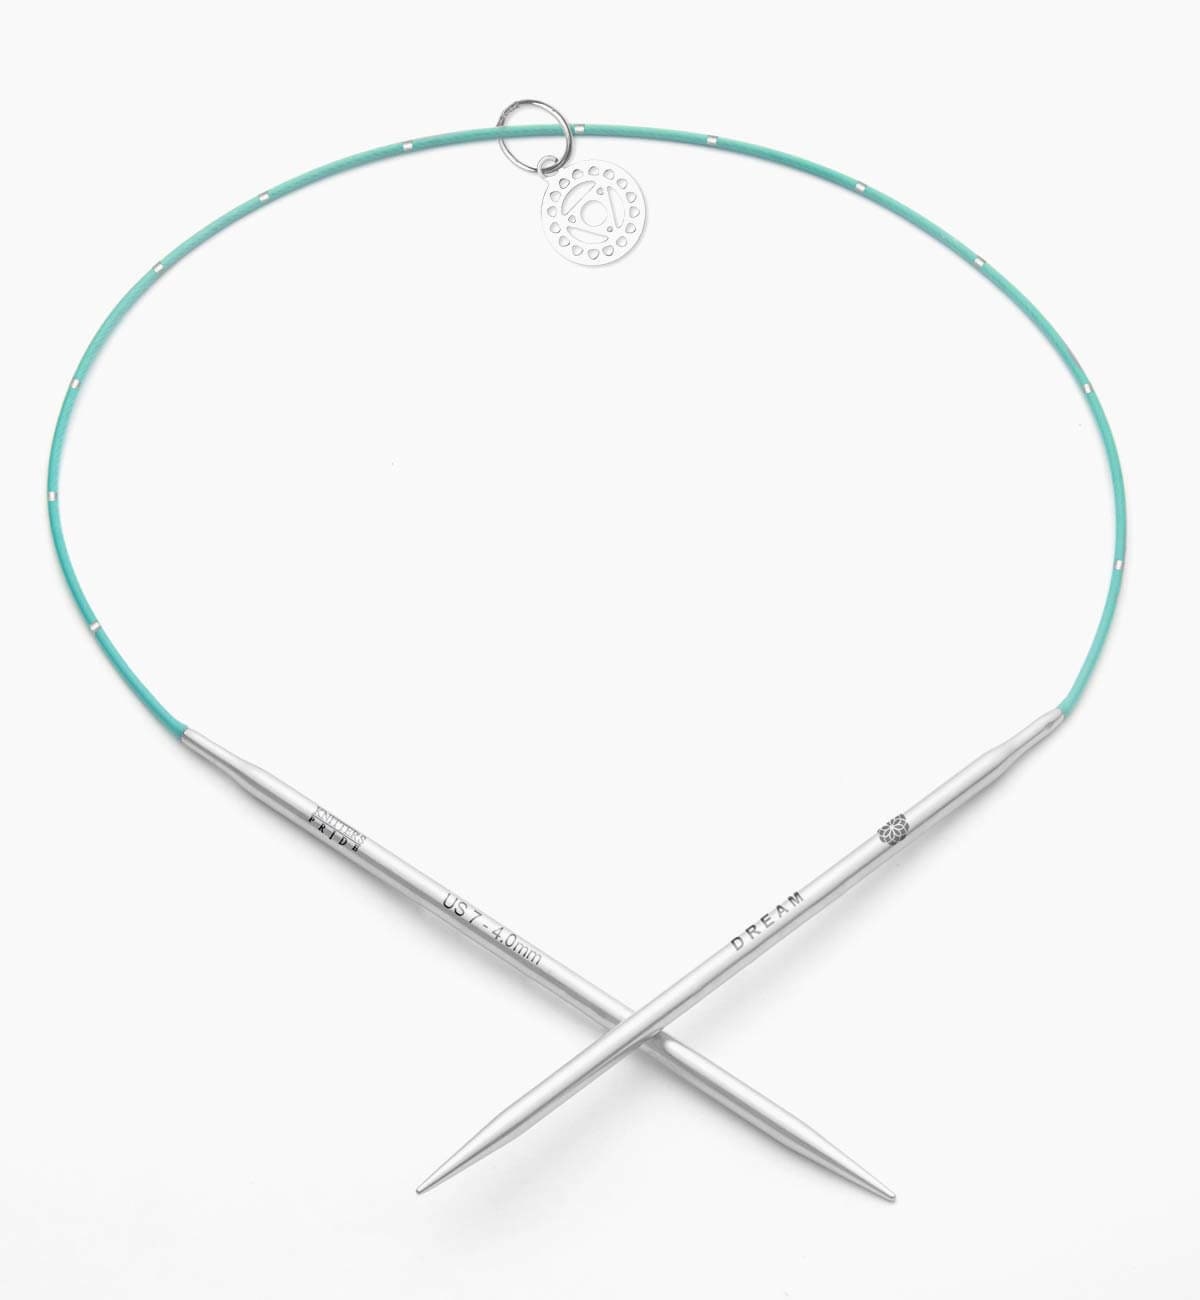 Comprar agujas circulares Knit Pro Mindful, TheLanaBox